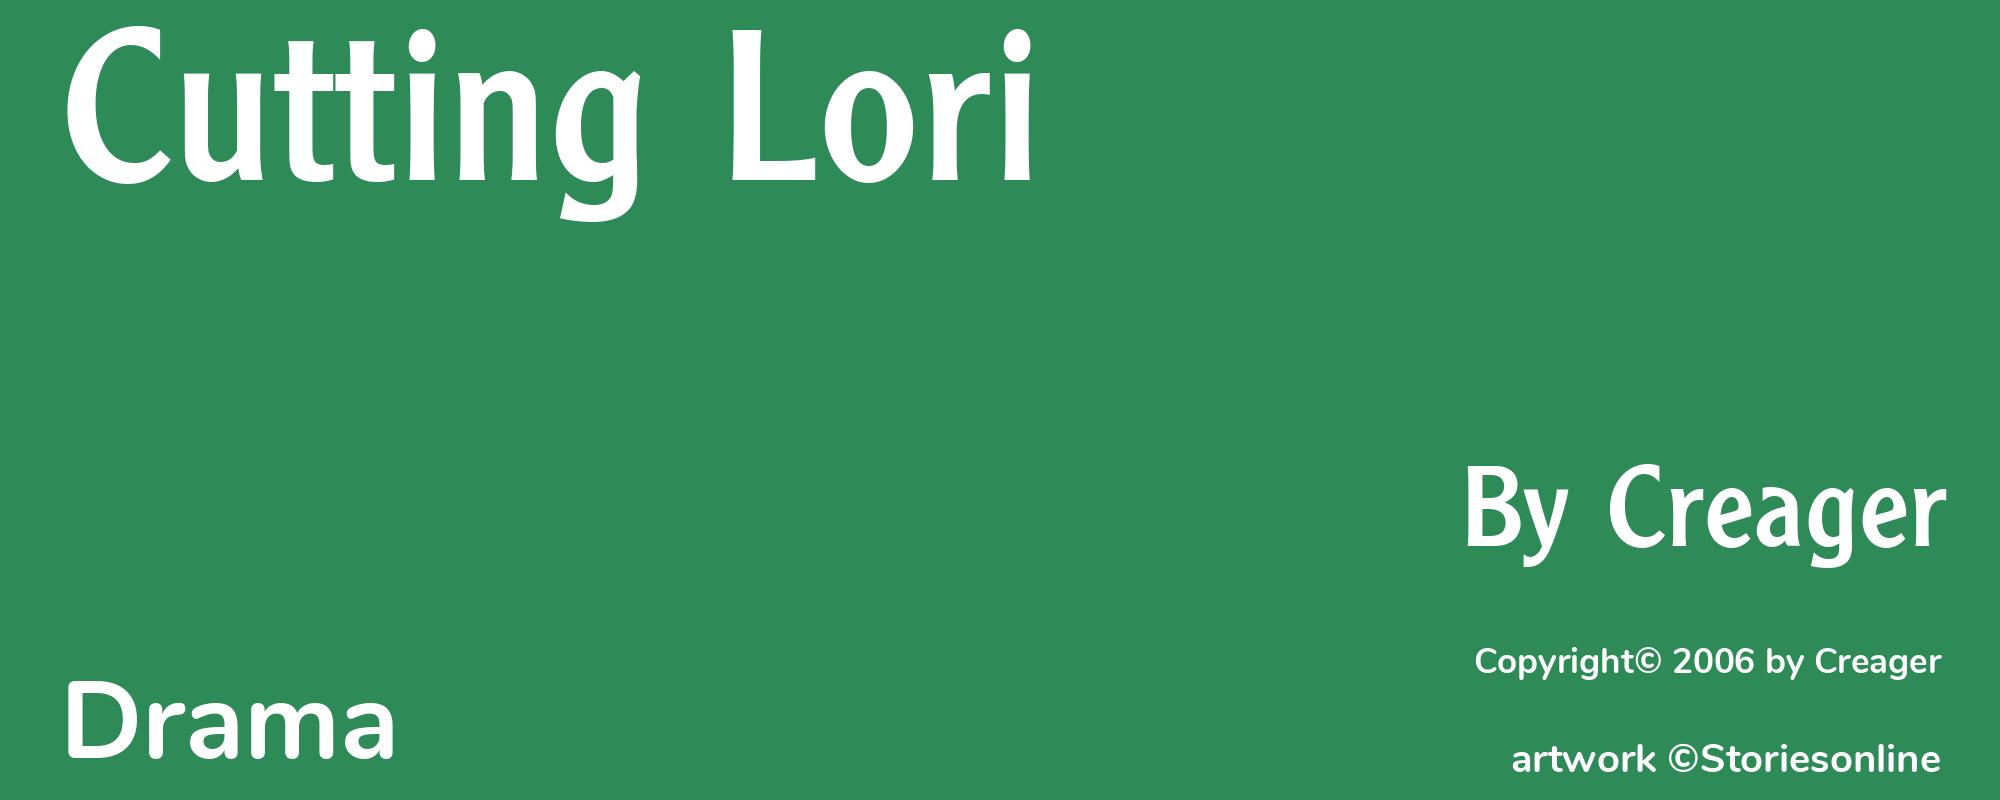 Cutting Lori - Cover